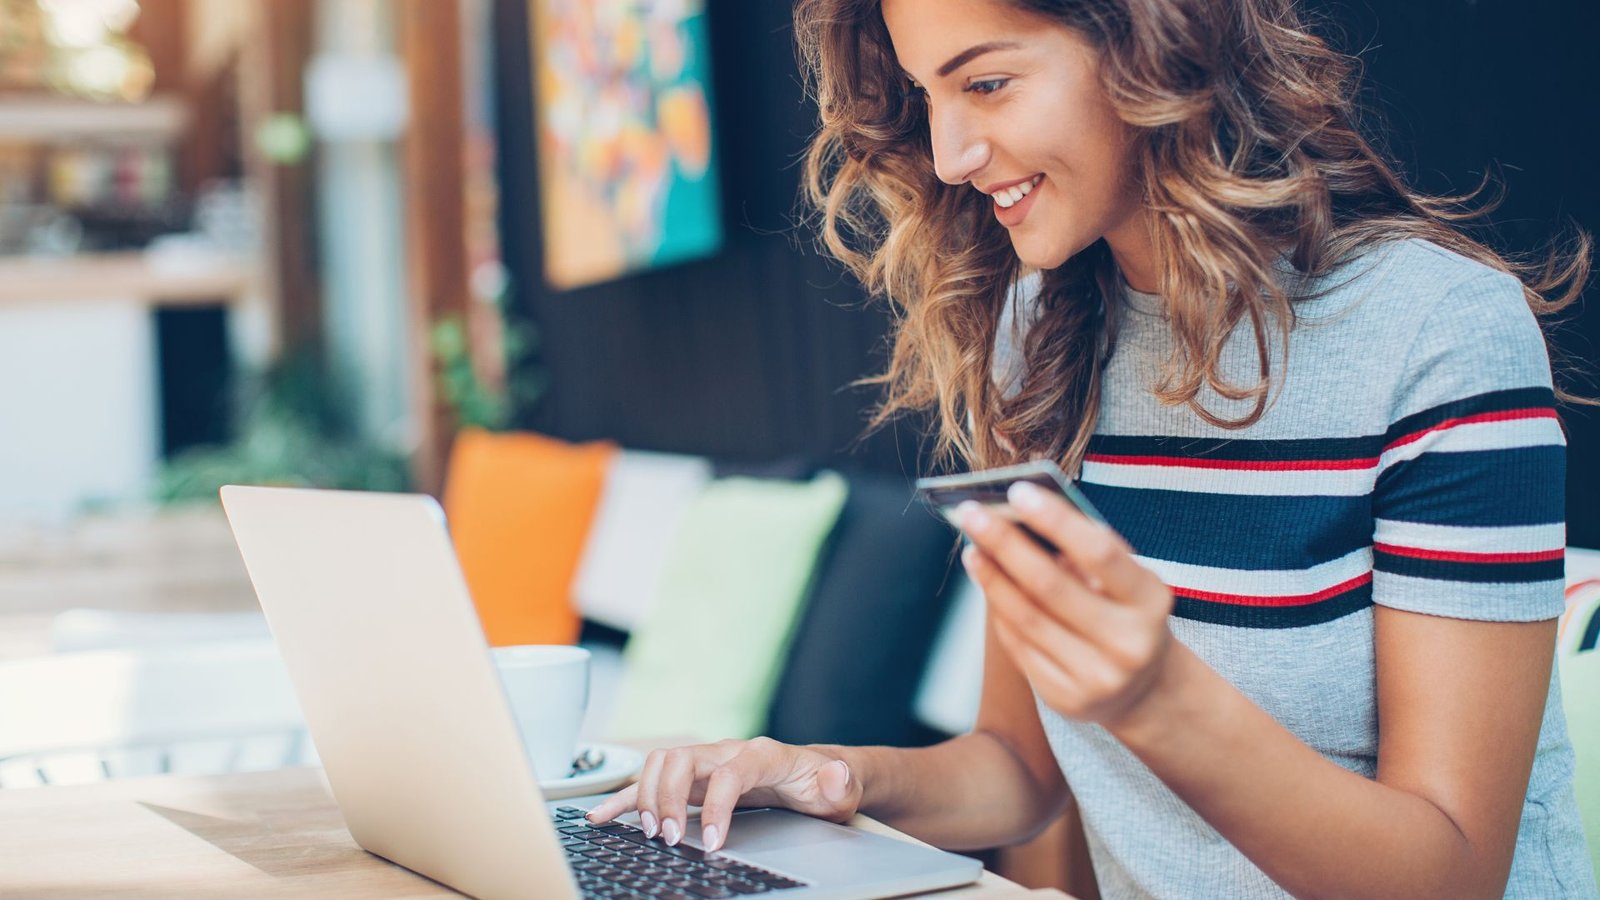 Jeune femme souriante avec une carte bleue en main en train de réaliser un achat sur internet